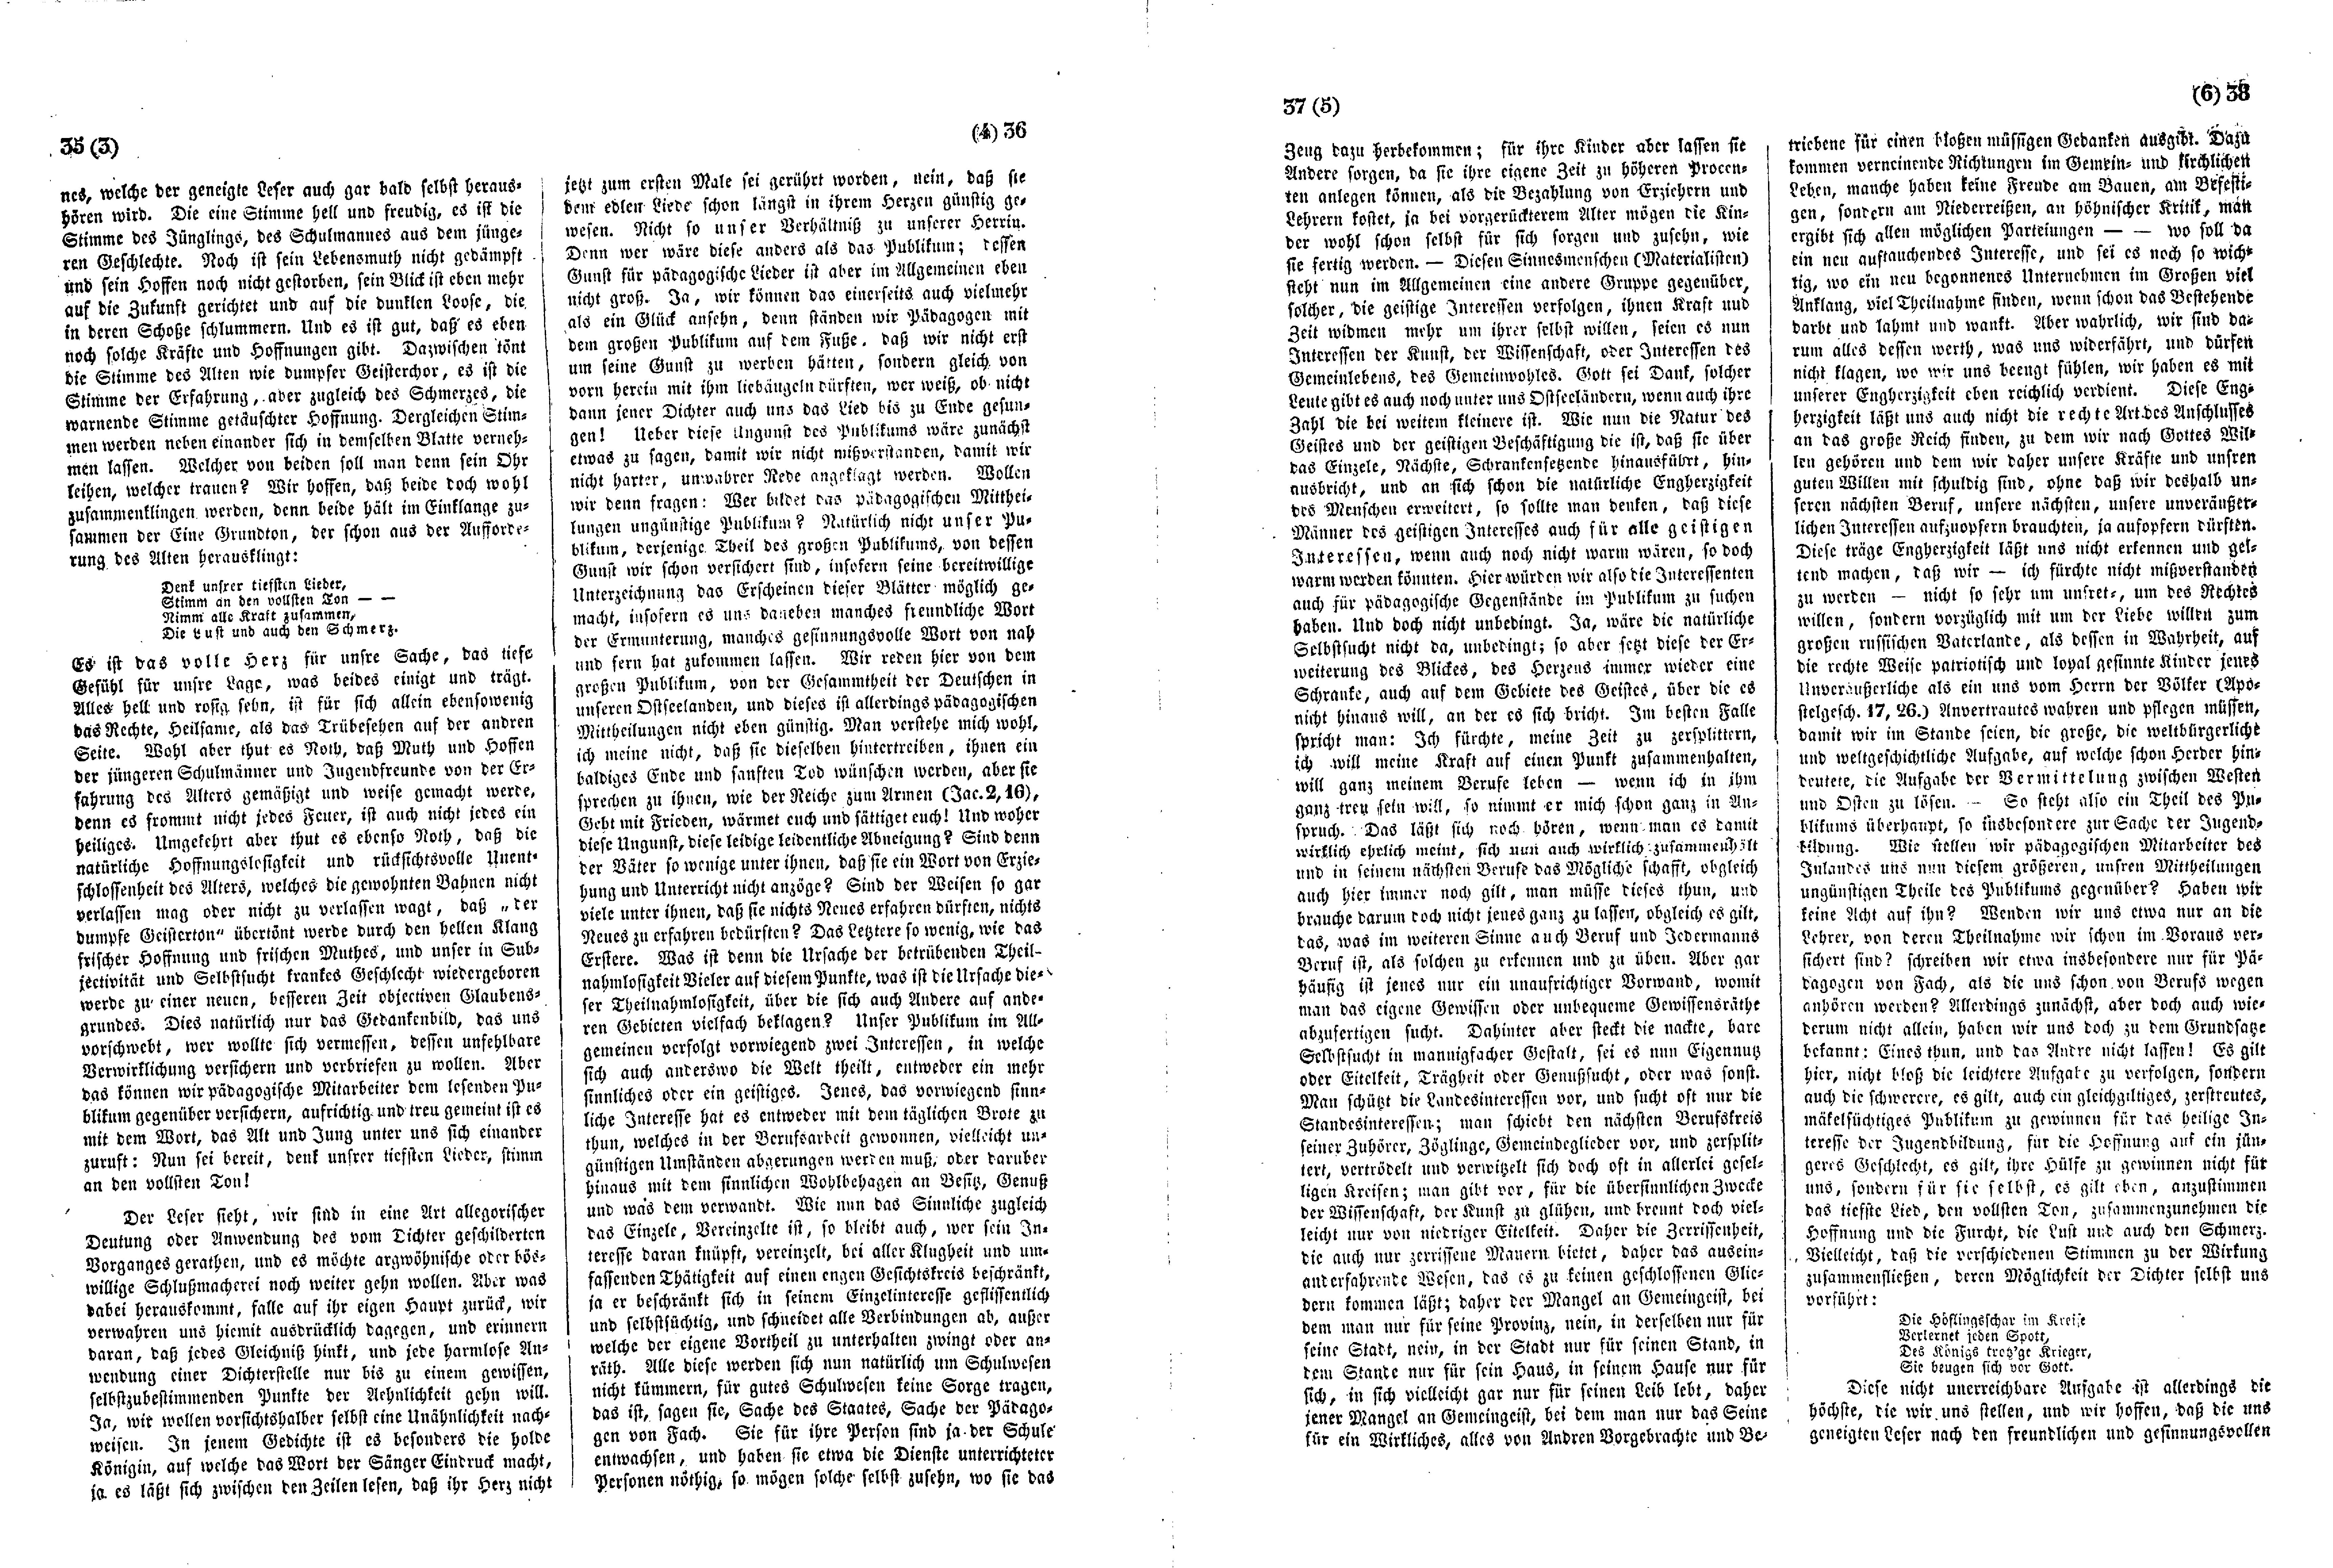 Das Inland [11] (1846) | 14. (35-38) Основной текст